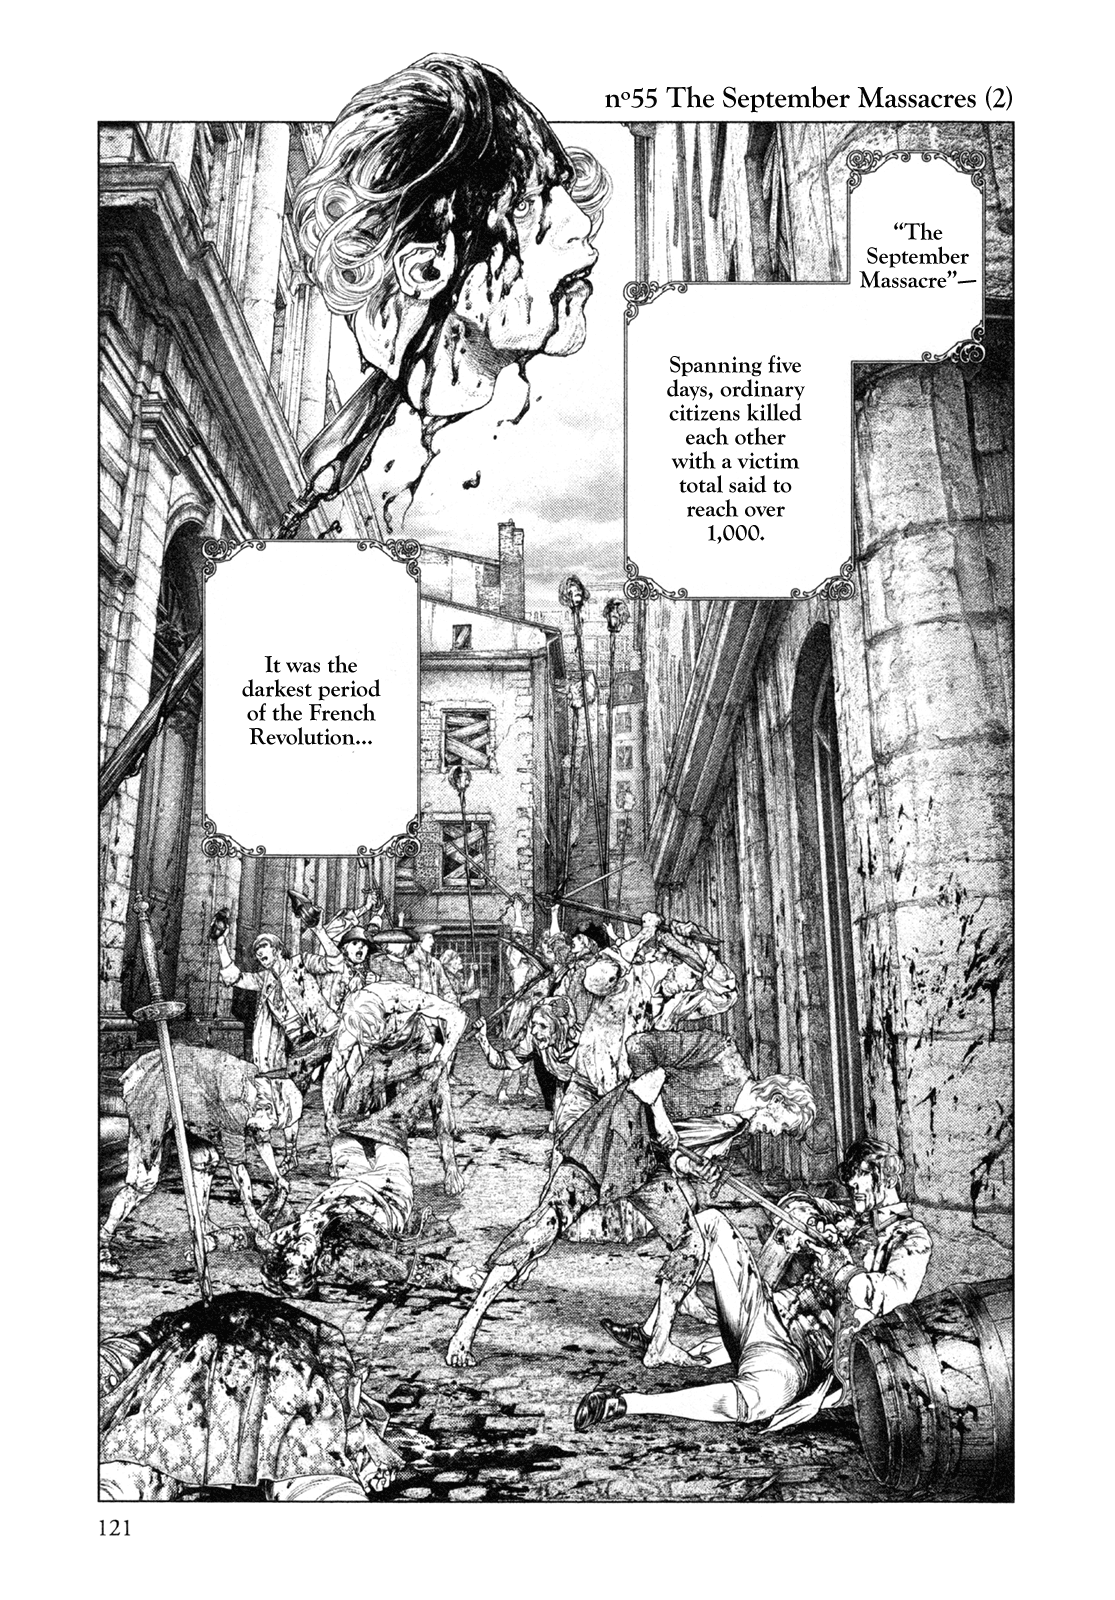 Innocent Rouge Vol.8-Chapter.55-The-September-Massacres-(2) Image